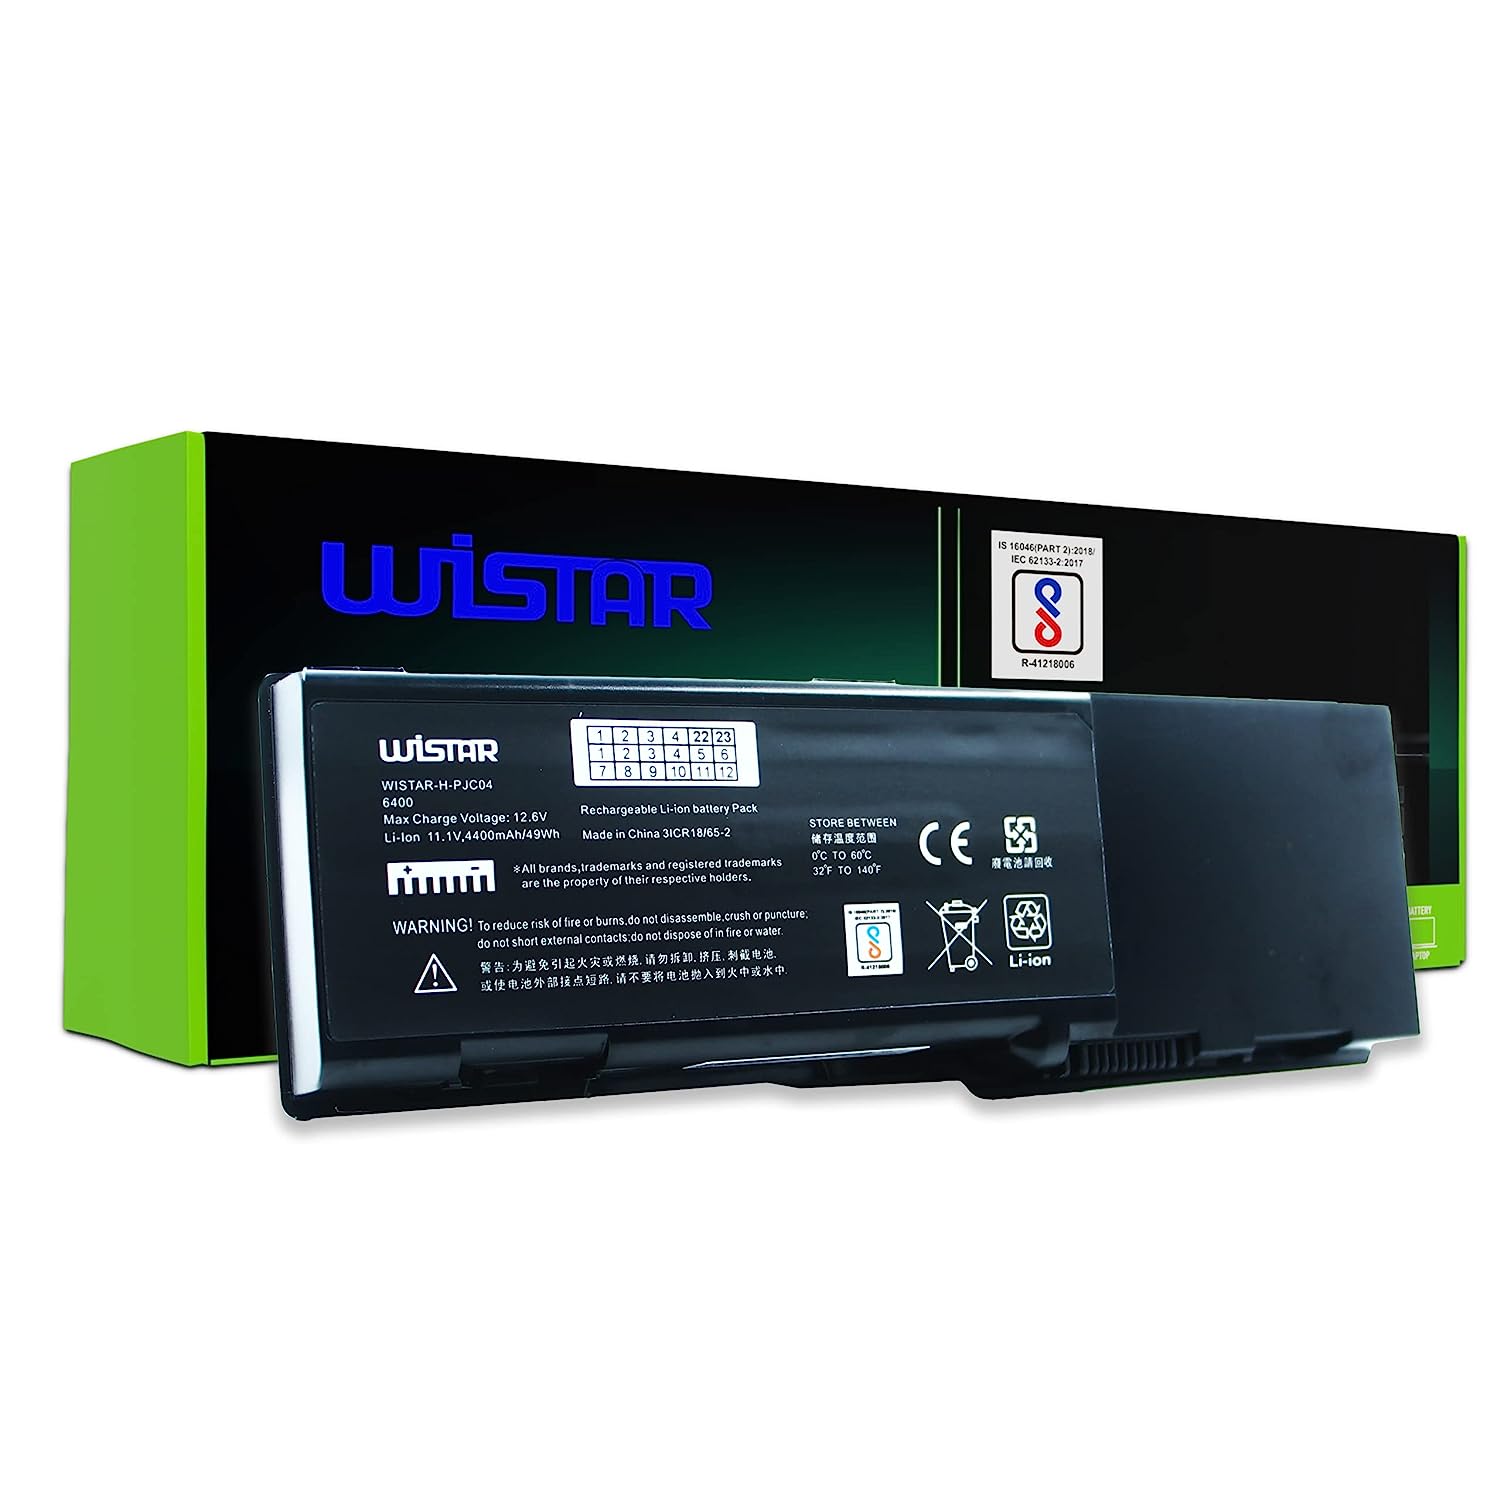 WISTAR Laptop Battery for Dell Inspiron 6400, E1501, E1505, 131L Vostro 1000, 1501 P/No. GD761 KD476 JN149 PD942